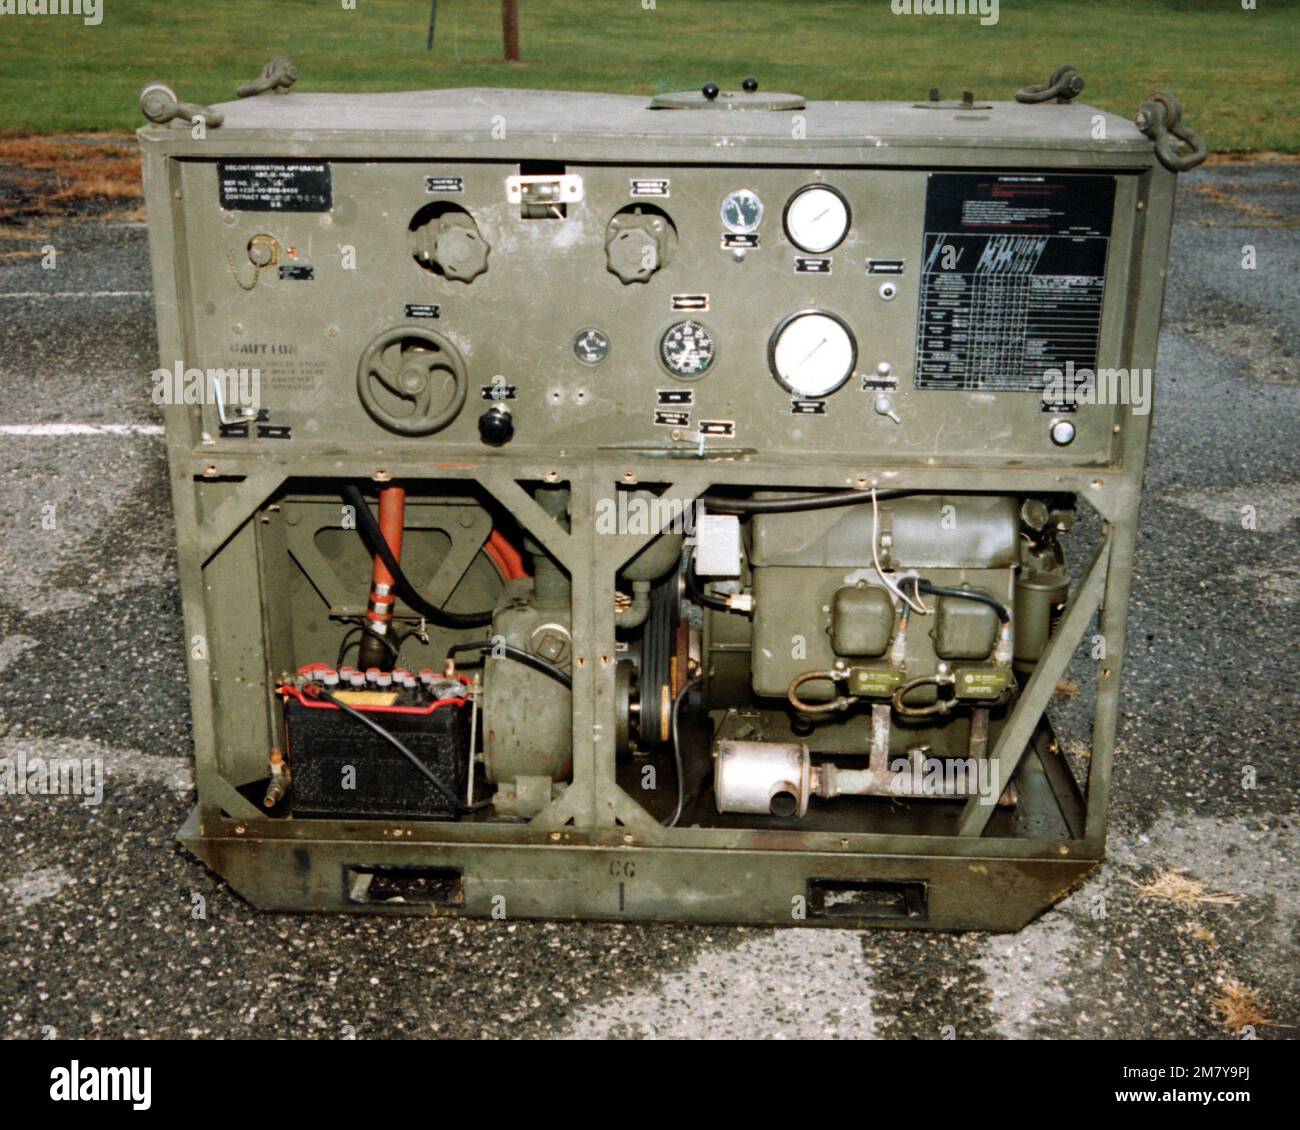 Ein Blick auf das M-12A1 Mobile Dekontaminationsgerät, das vom Chemical Systems Laboratory entwickelt wurde. Basis: Aberdeen Proving Grounds Bundesstaat: Maryland (MD) Land: Vereinigte Staaten von Amerika (USA) Stockfoto